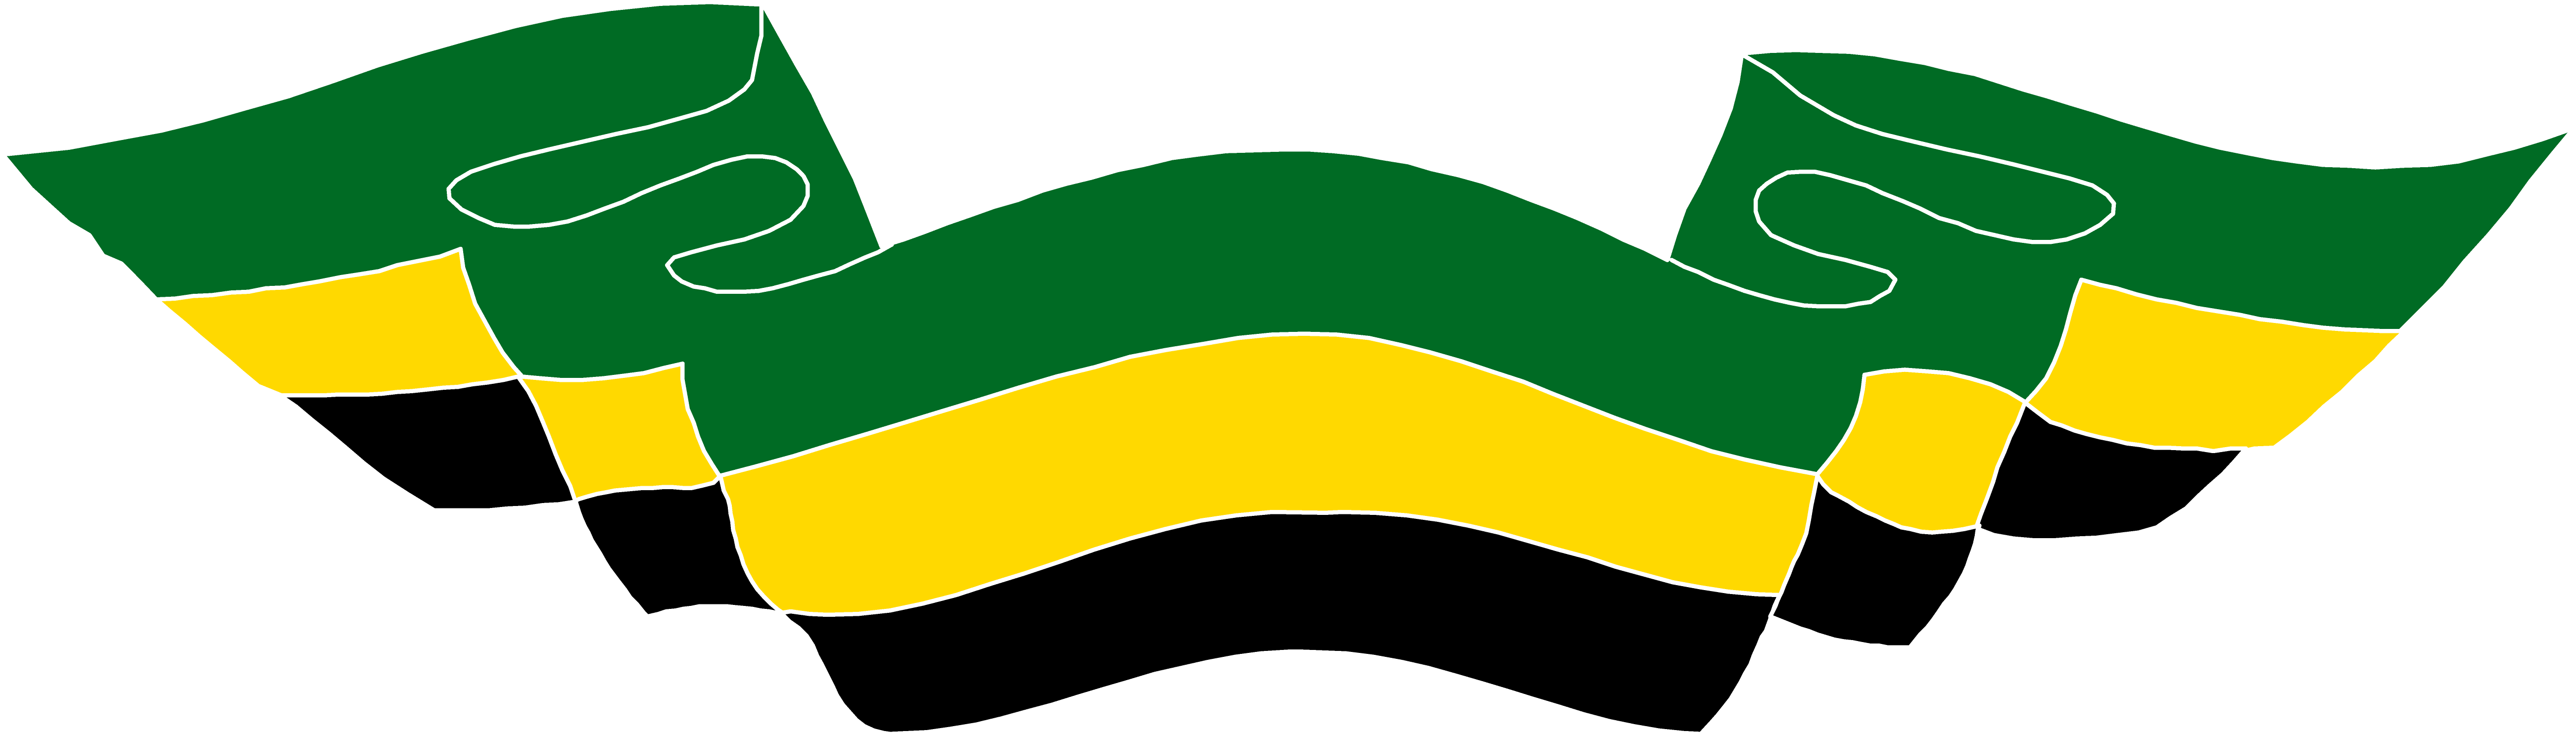 Jamaica Flag PNG Transparent